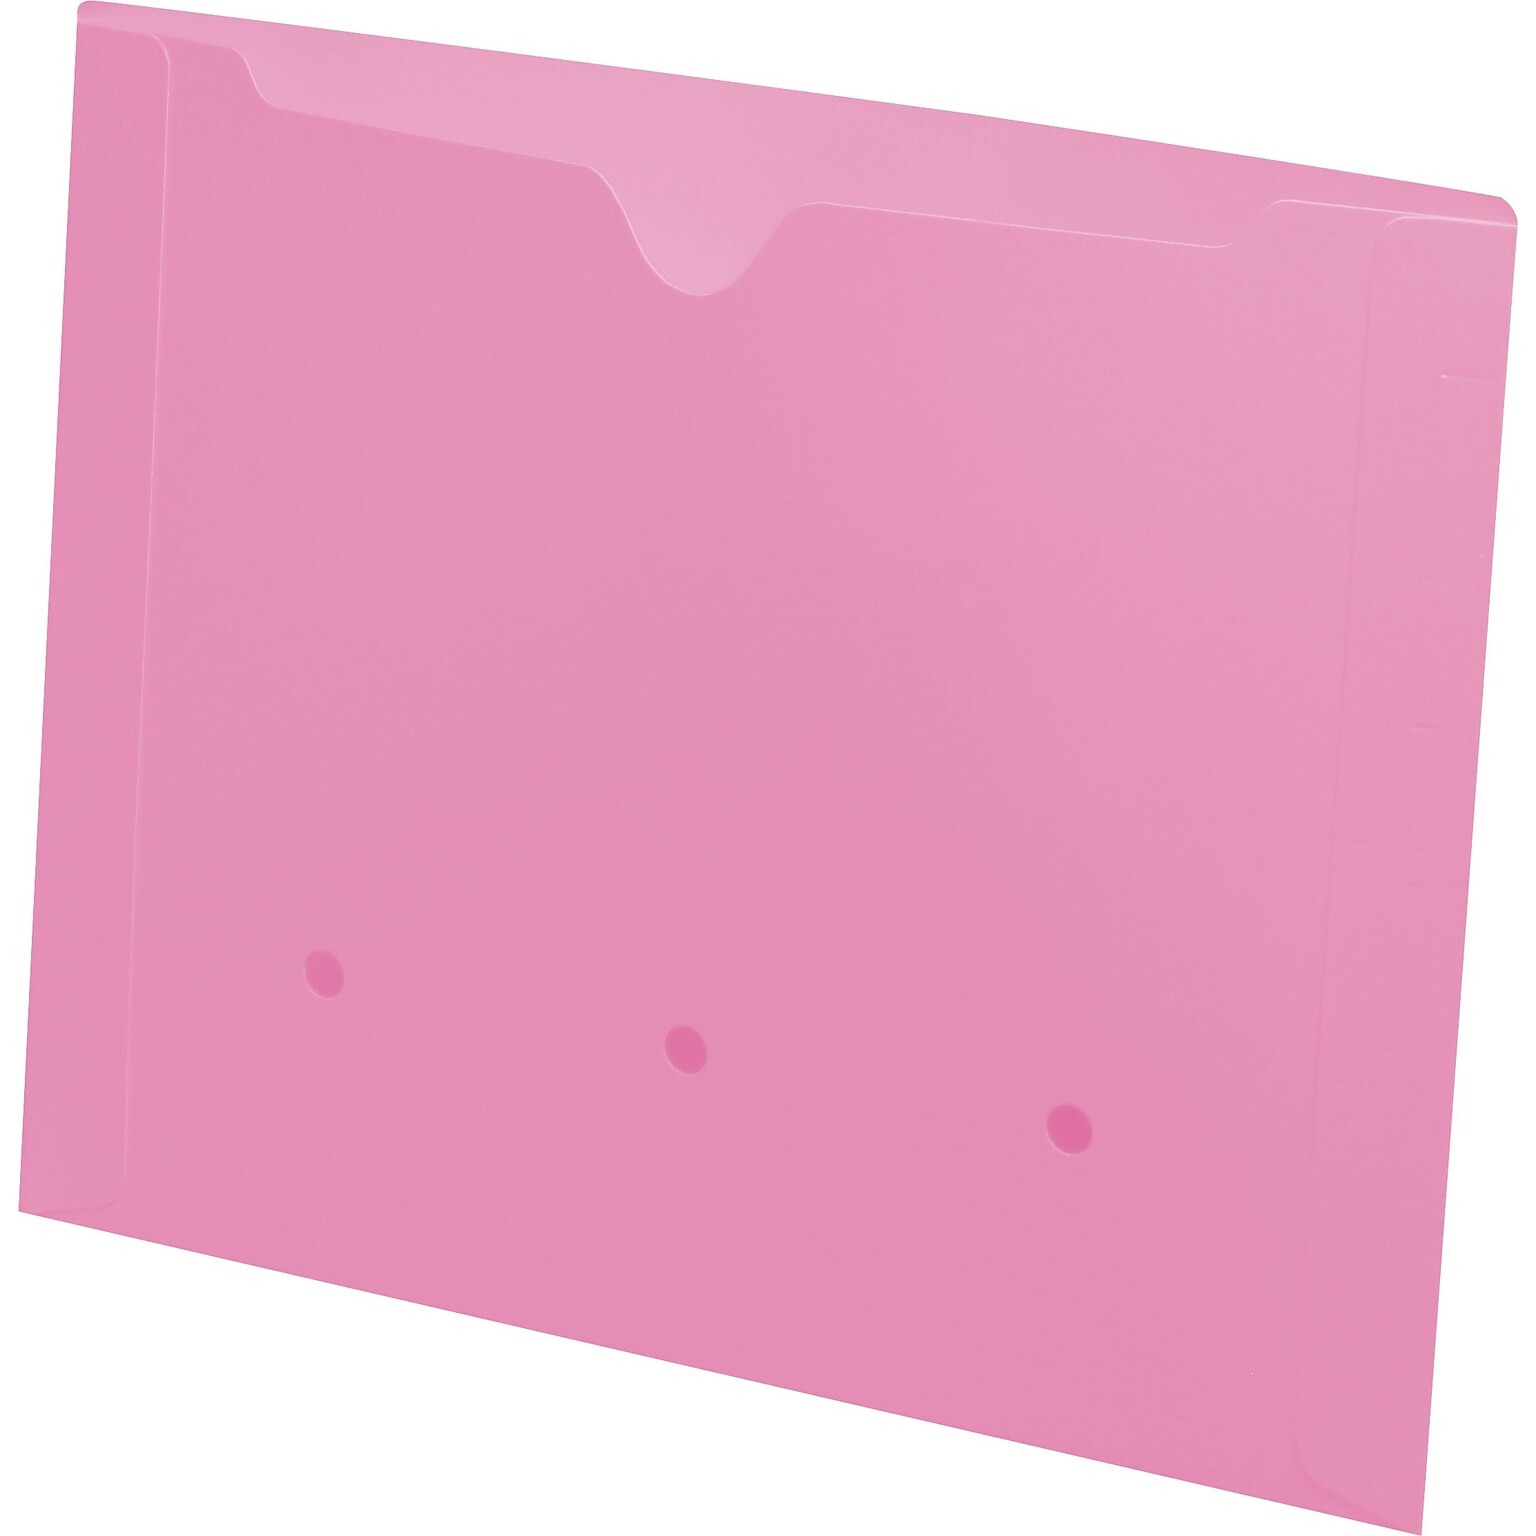 Medical Arts Press®  File Pocket, Letter Size, Pink, 50/Box (52394PK)